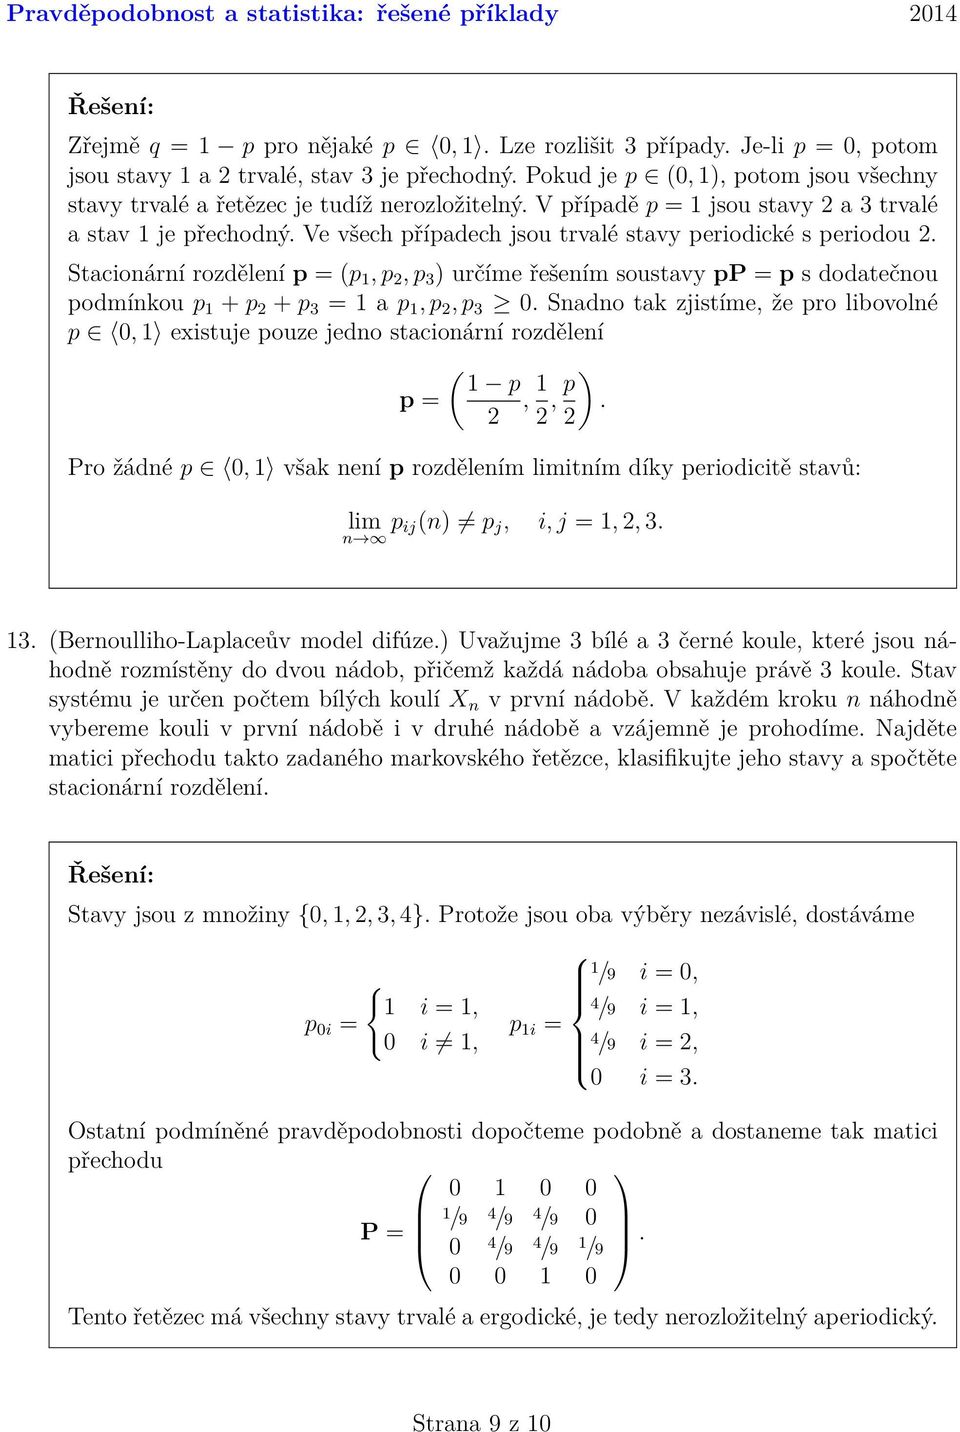 pp = p s dodatečnou podmínkou p 1 + p + p 3 = 1 a p 1, p, p 3 0 Snadno tak zjistíme, že pro libovolné p 0, 1 existuje pouze jedno stacionární rozdělení ( 1 p p =, 1, p ) Pro žádné p 0, 1 však není p